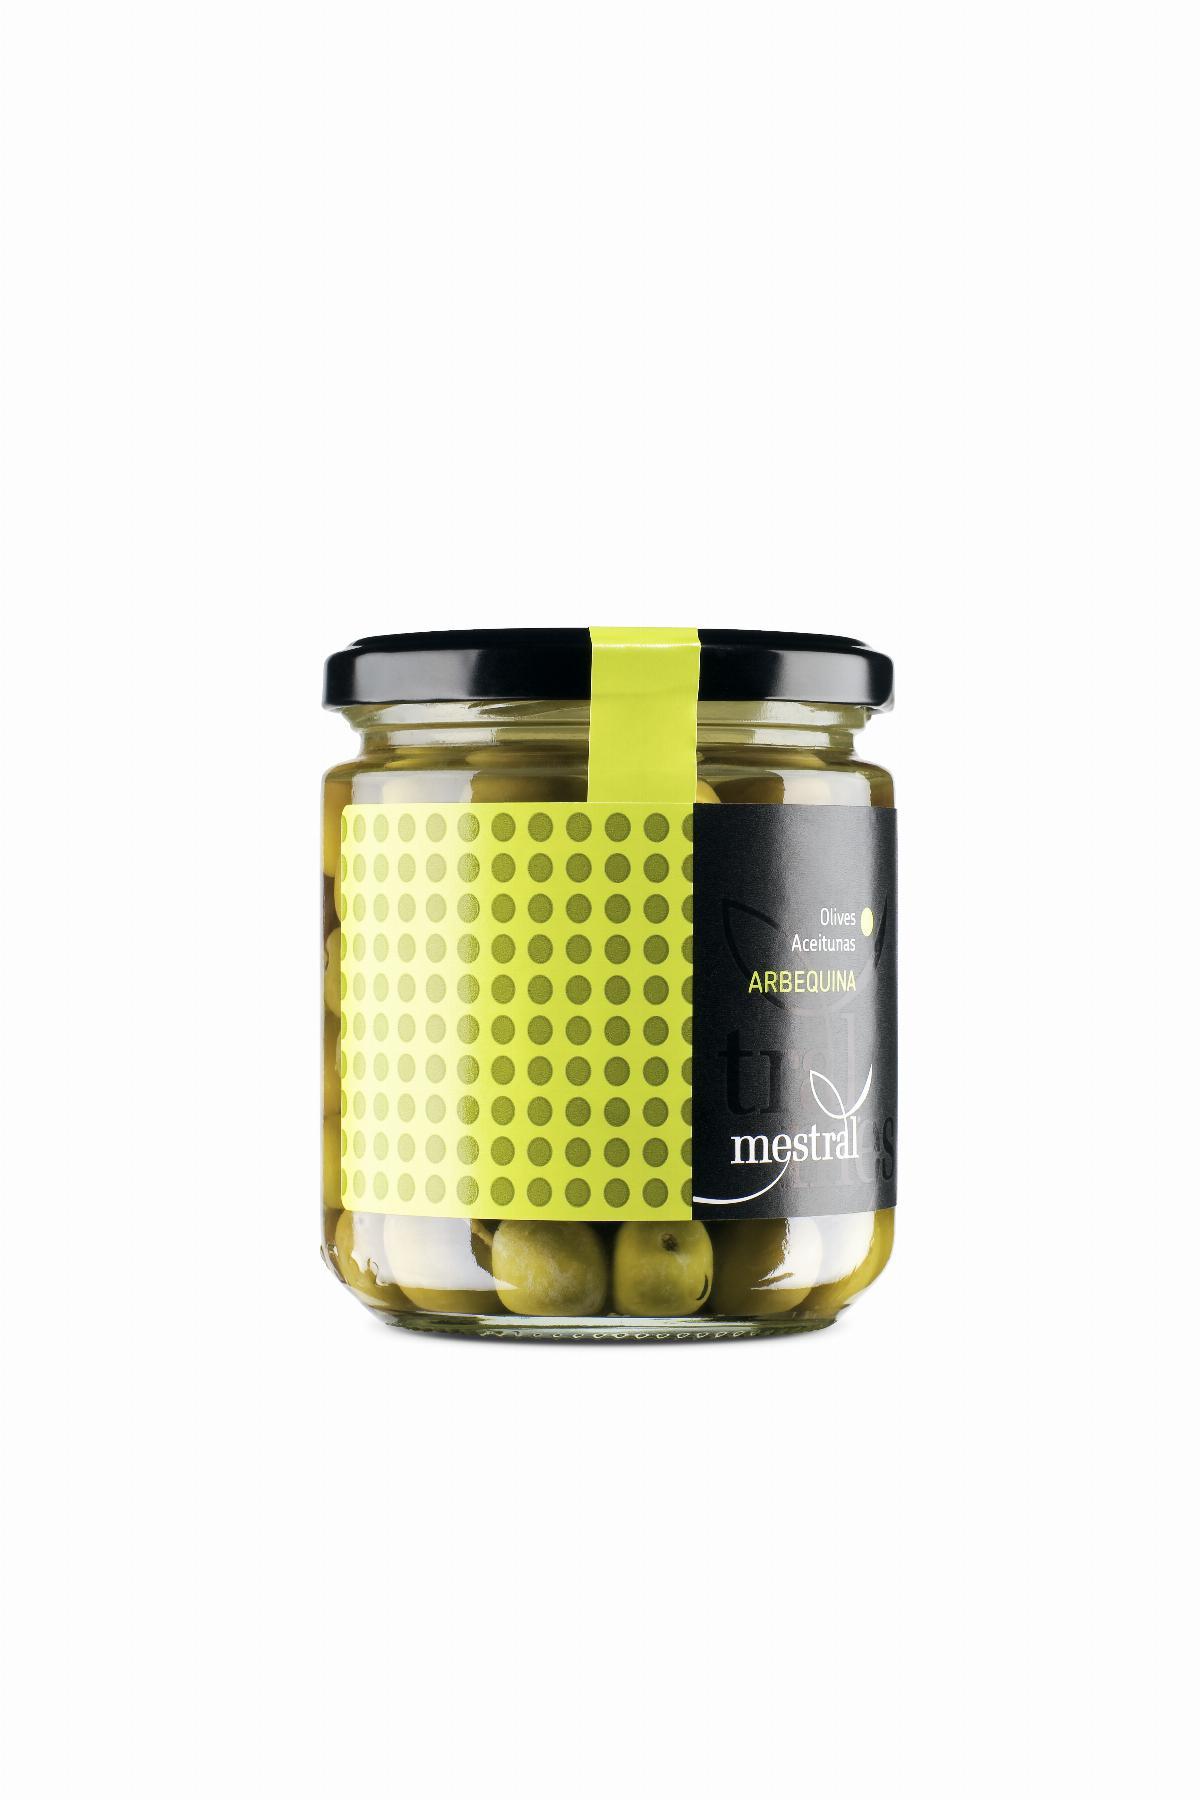 Olives - Olives arbequines Metral pot vidre 210g - Mestral Cambrils